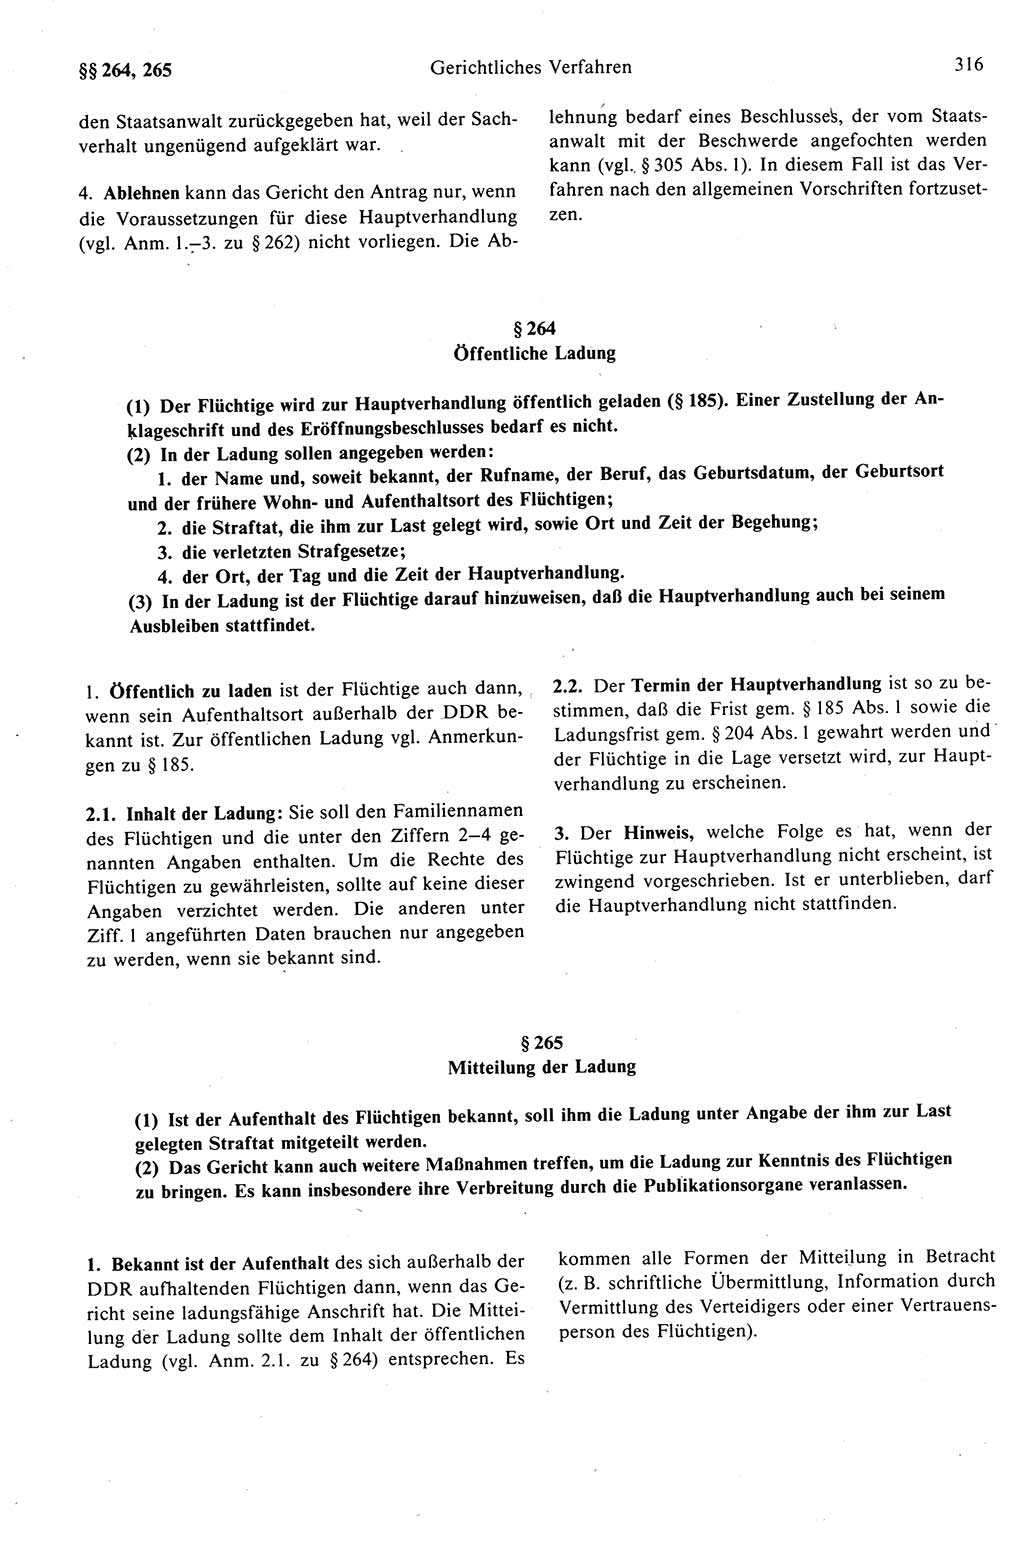 Strafprozeßrecht der DDR (Deutsche Demokratische Republik), Kommentar zur Strafprozeßordnung (StPO) 1989, Seite 316 (Strafprozeßr. DDR Komm. StPO 1989, S. 316)